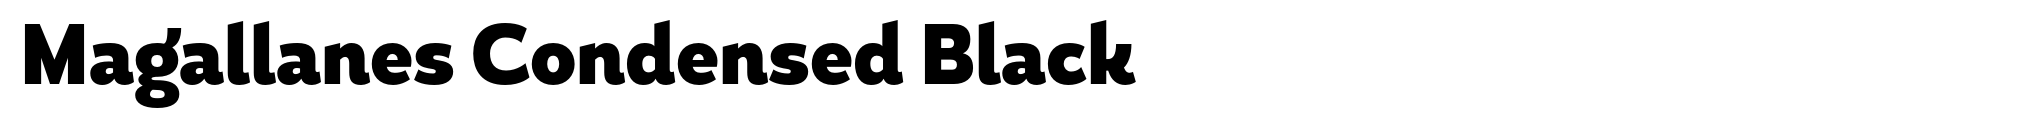 Magallanes Condensed Black image